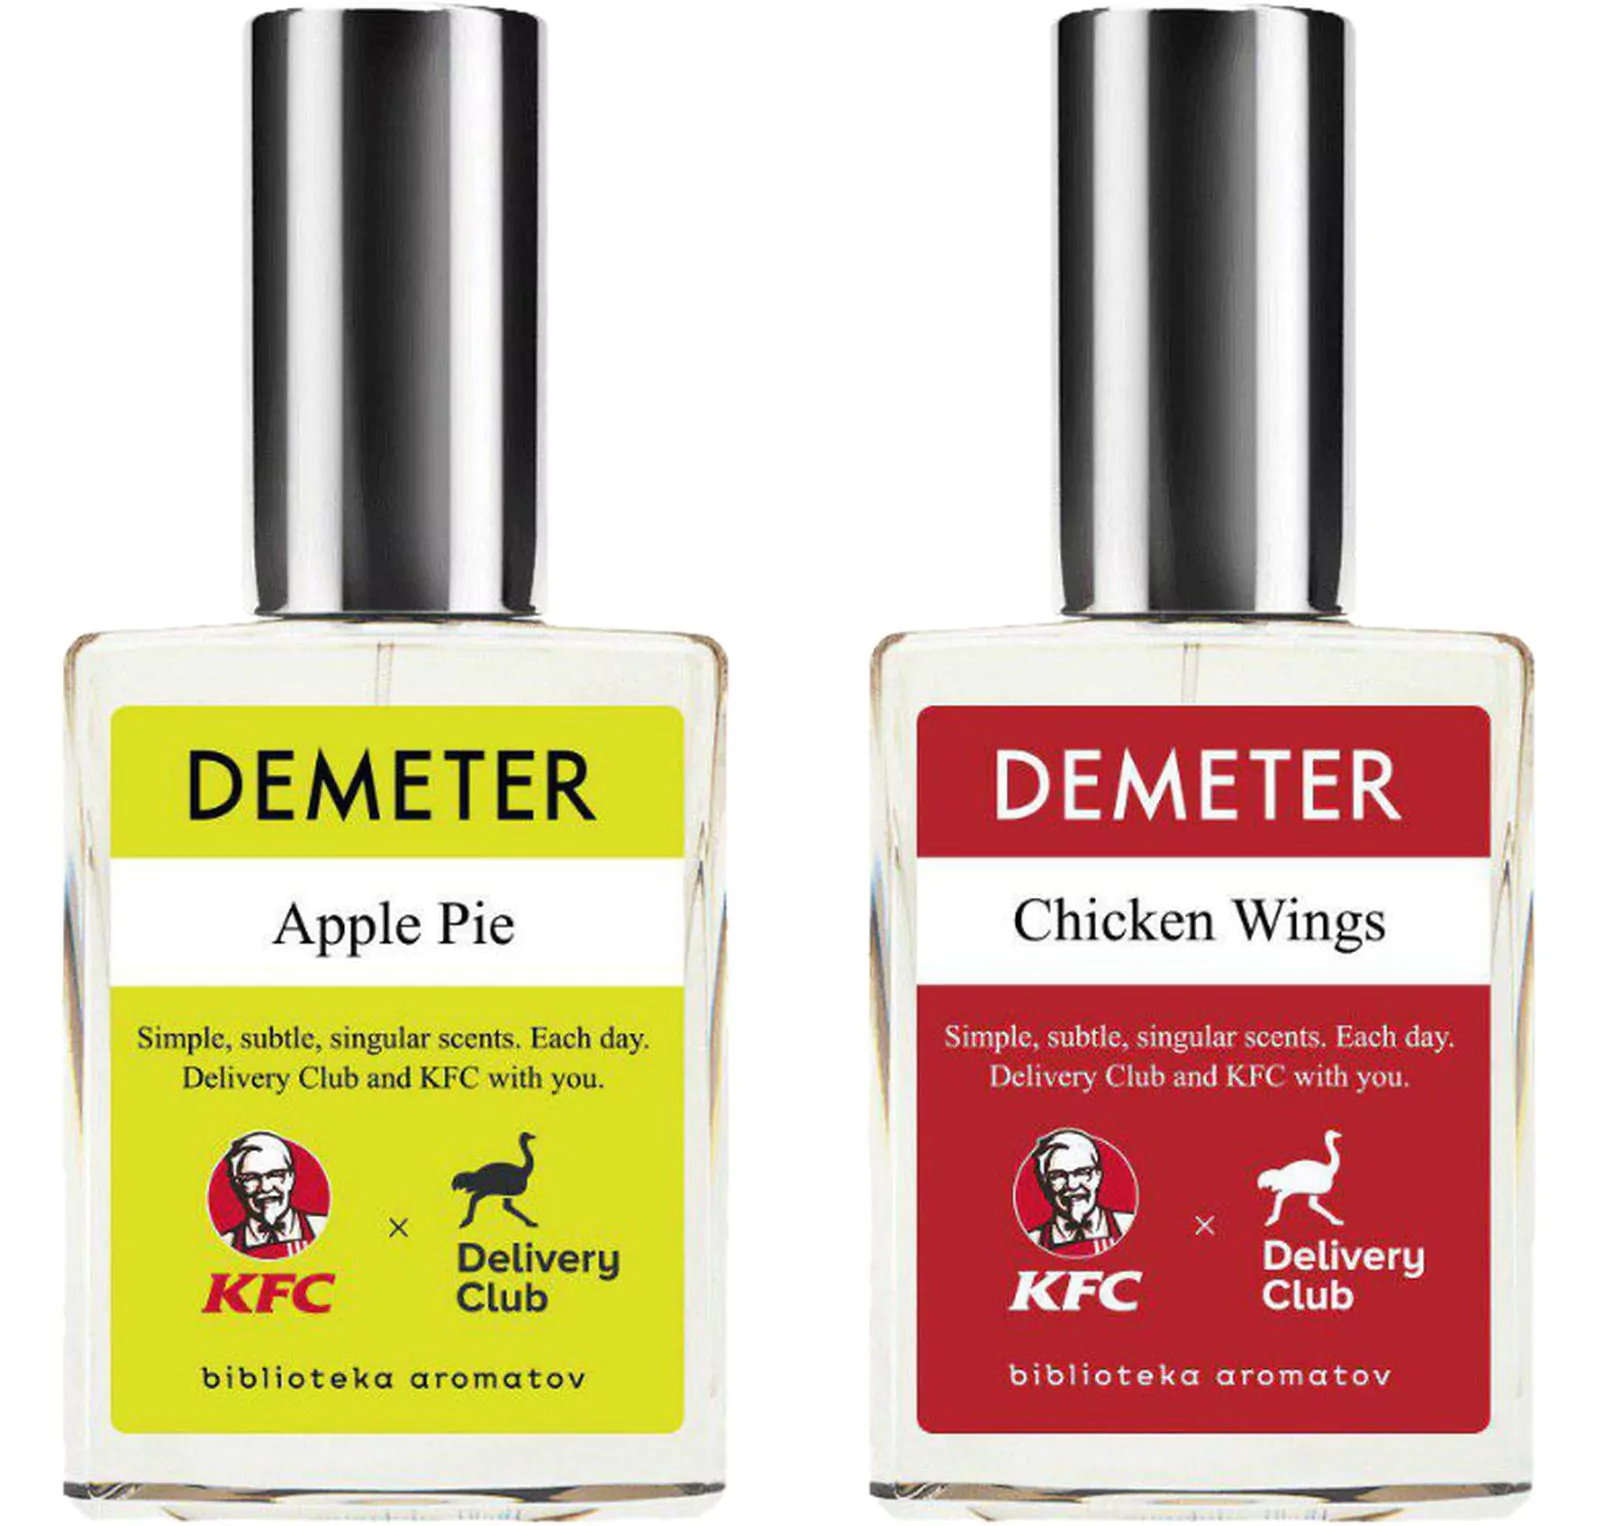 «Библиотека ароматов» Demeter пополнилась «Яблочным пирожком» и «Куриными крылышками», фото 1